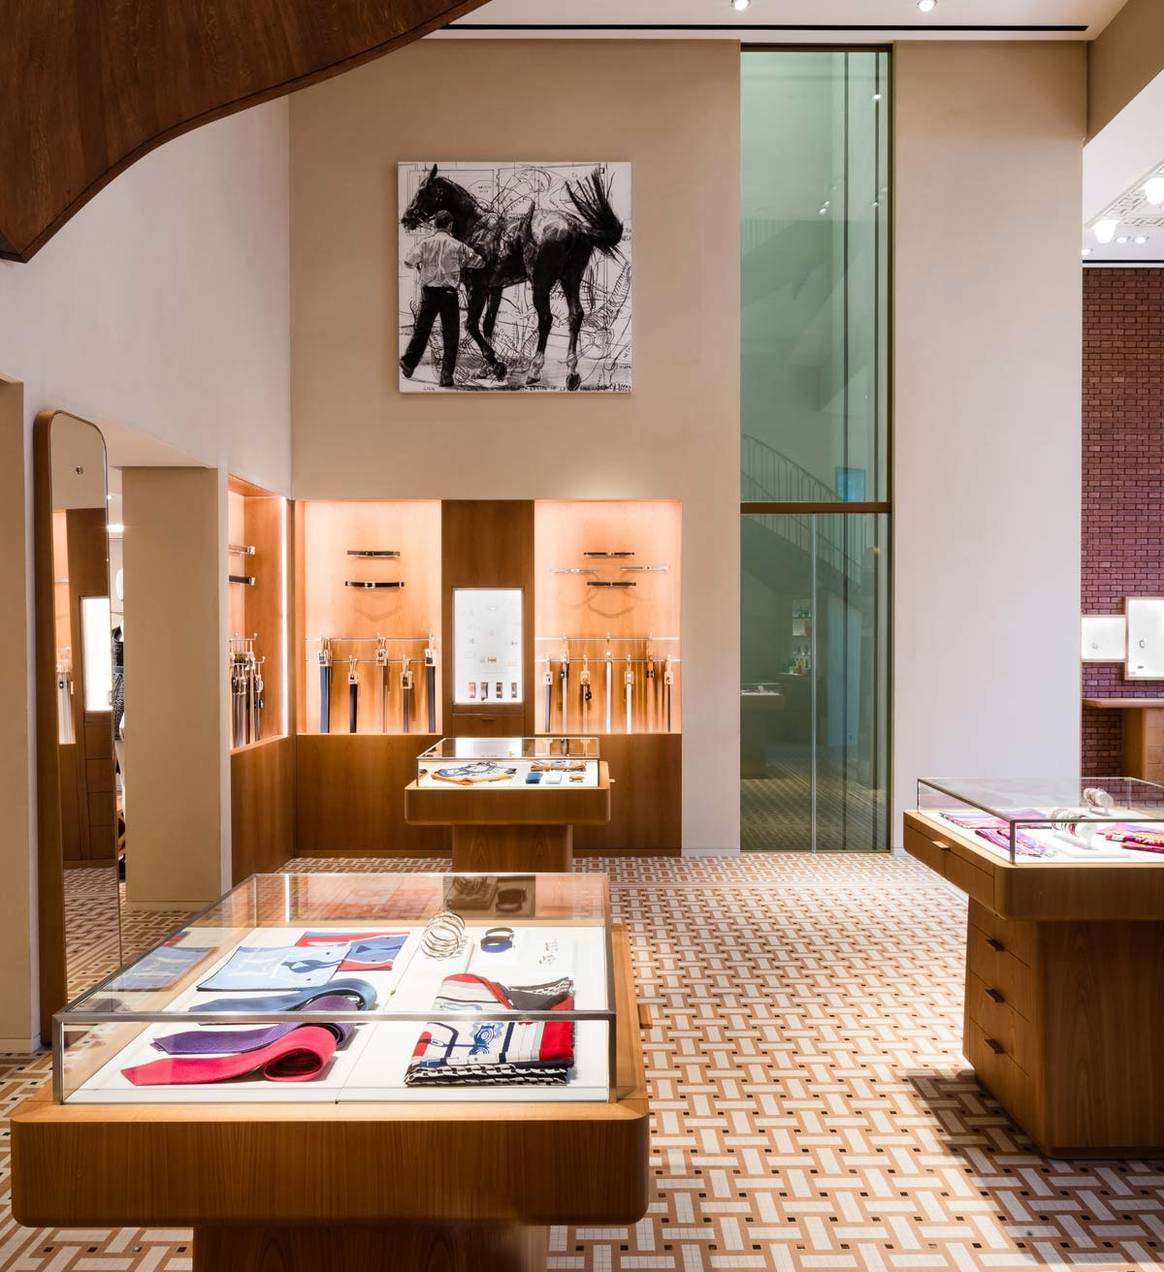 Kijken: Hermès verwerkt Nederlands tintje in nieuwe winkel